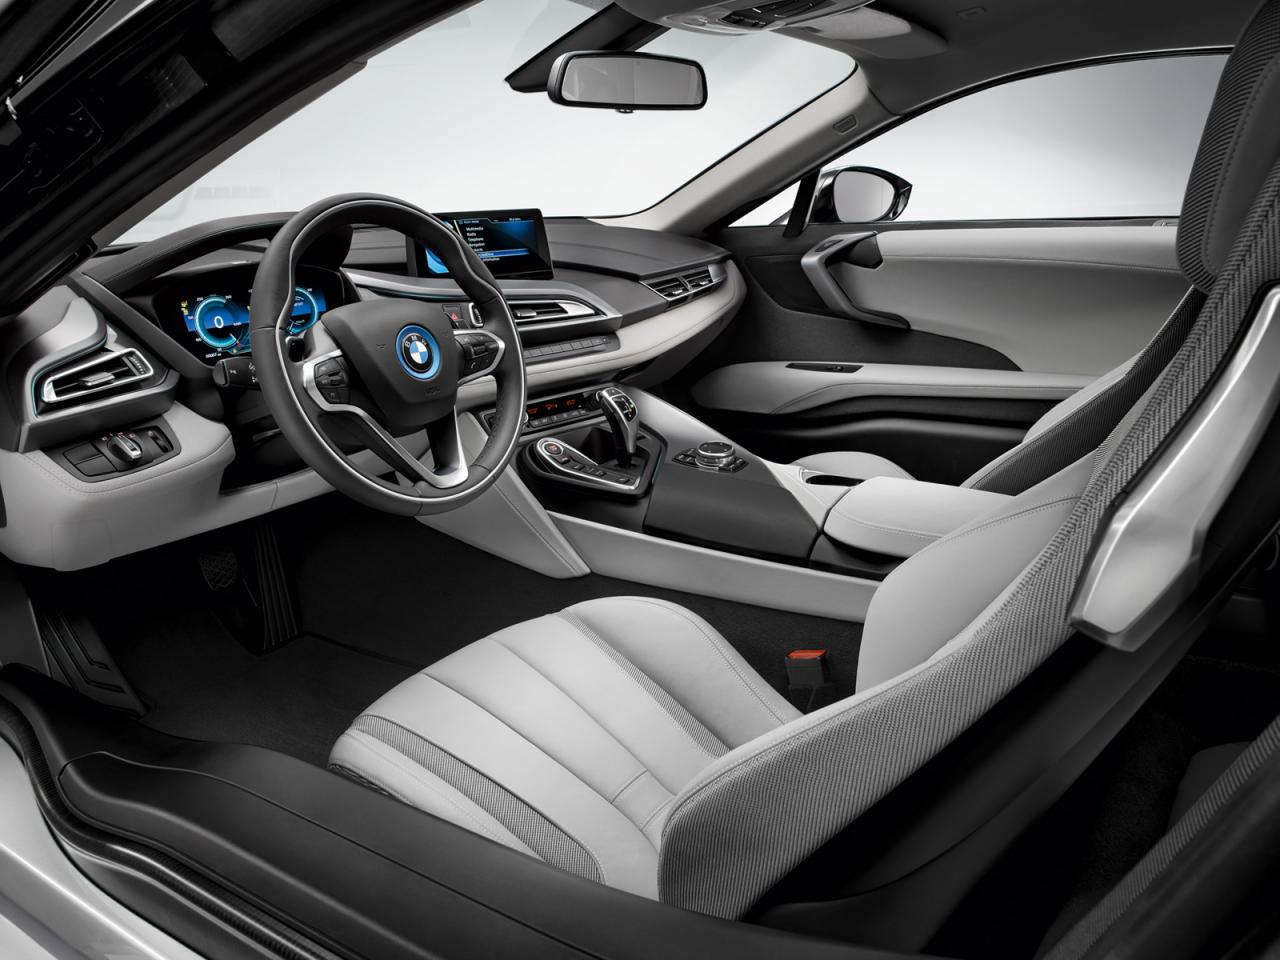 Hình ảnh chính thức của BMW i8 phiên bản sản xuất 1